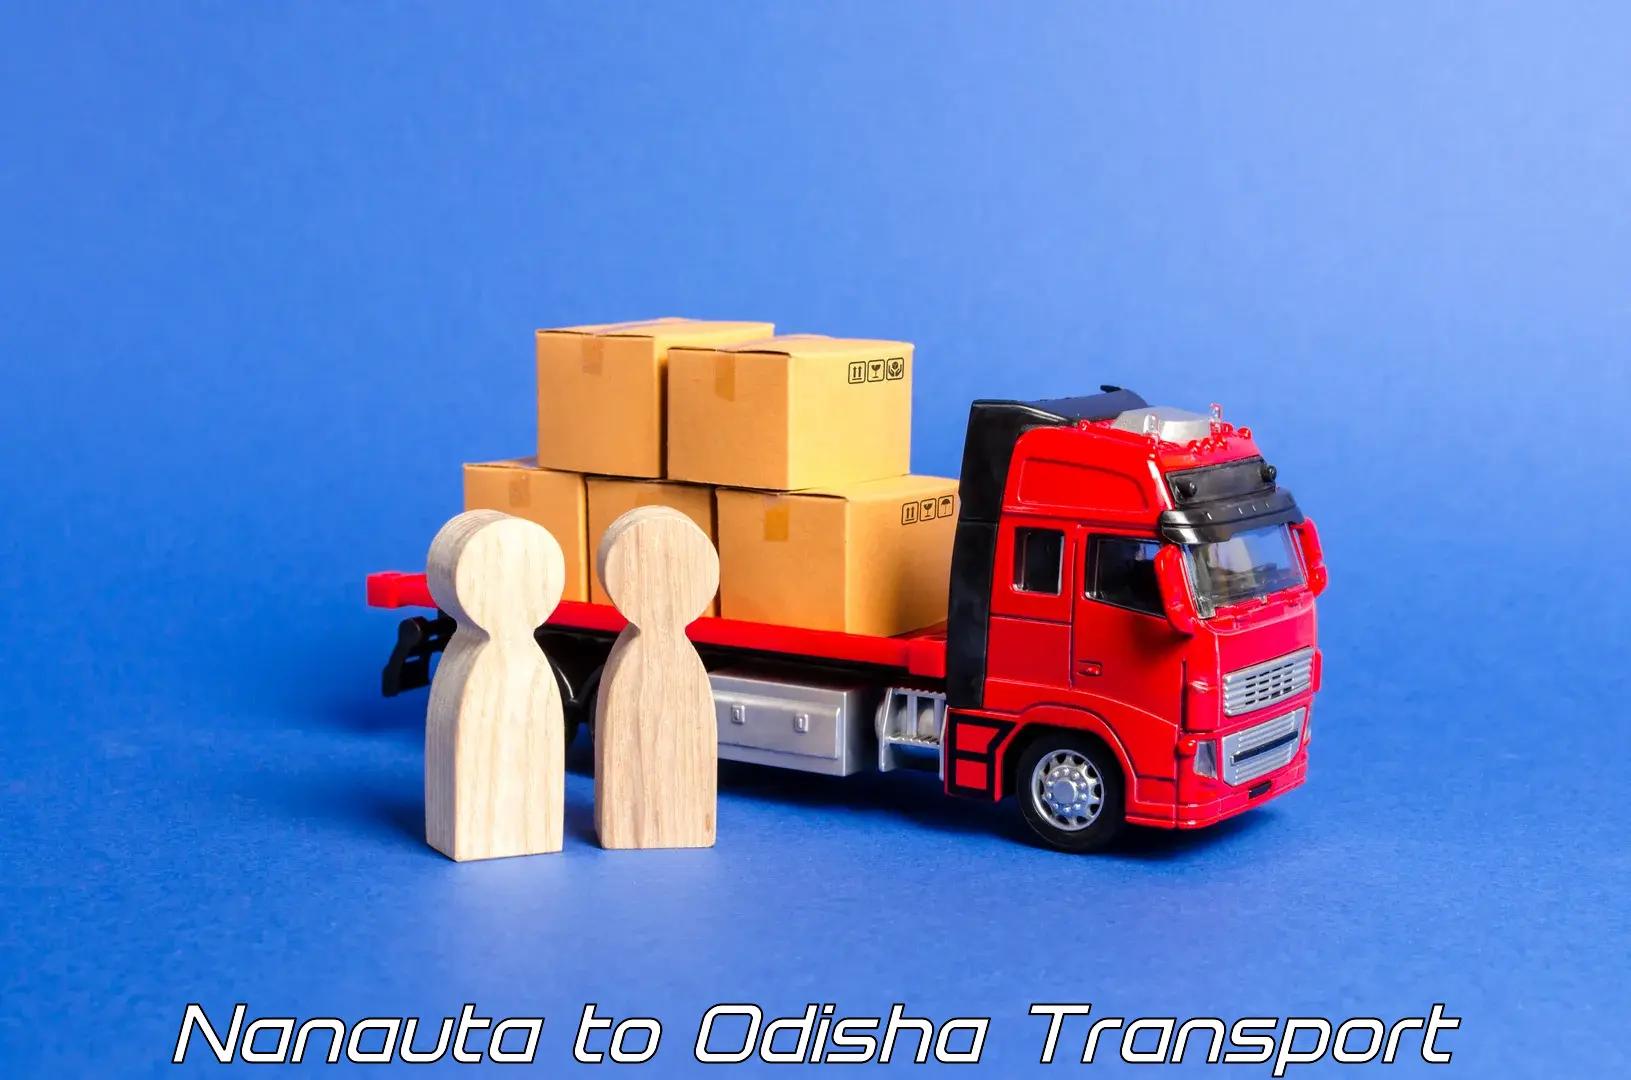 Transport shared services Nanauta to Mohana